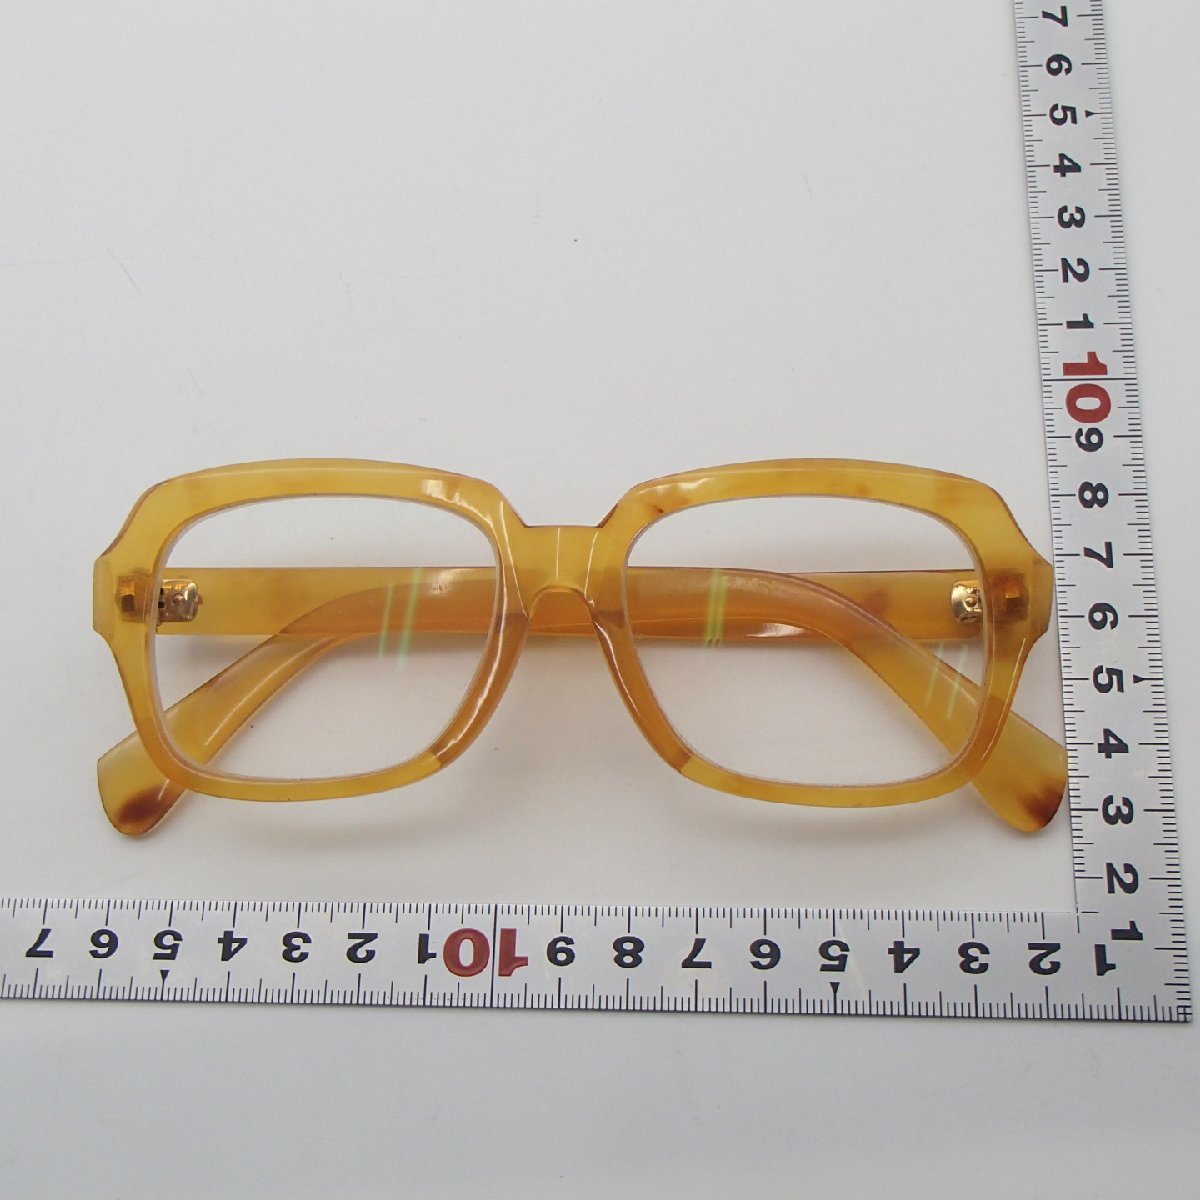 ◎眼鏡 鼈甲 べっ甲 / K18 750 約42g/ ゴールド 金具 アクセサリー 